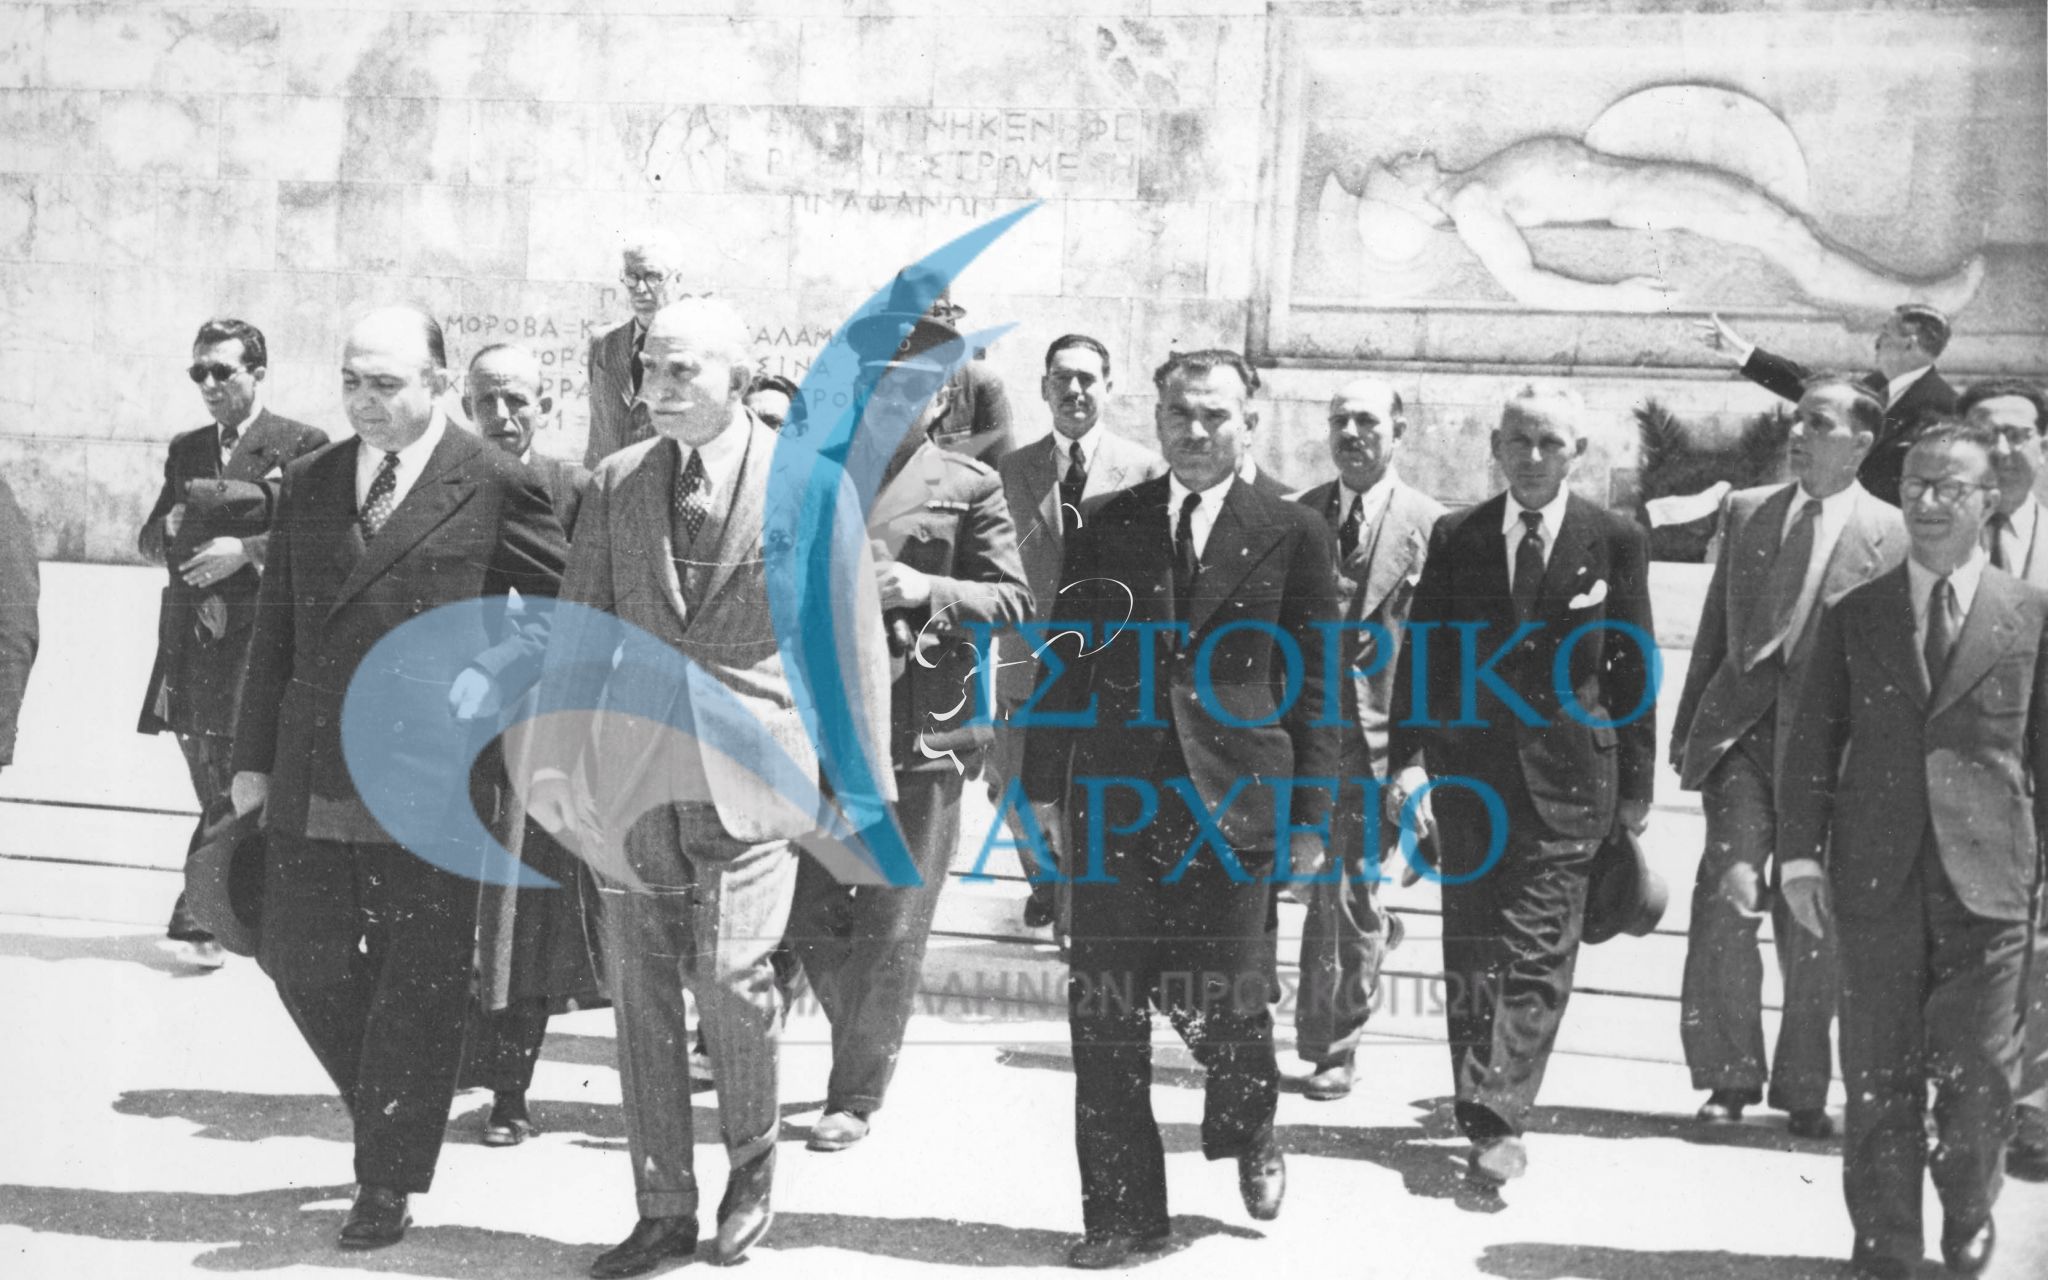 Ο Αντώνης Μπενάκης στο Μνημείο Αγνώστου Στρατιώτη κατά την κατάθεση Στεφάνου που έκαναν οι Περιφερειακοί Έφοροι Προσκόπων στο πλαίσιο του 1ου Συνεδρίου τους που έγινε στην Αθήνα τον Απρίλιο του 1946.